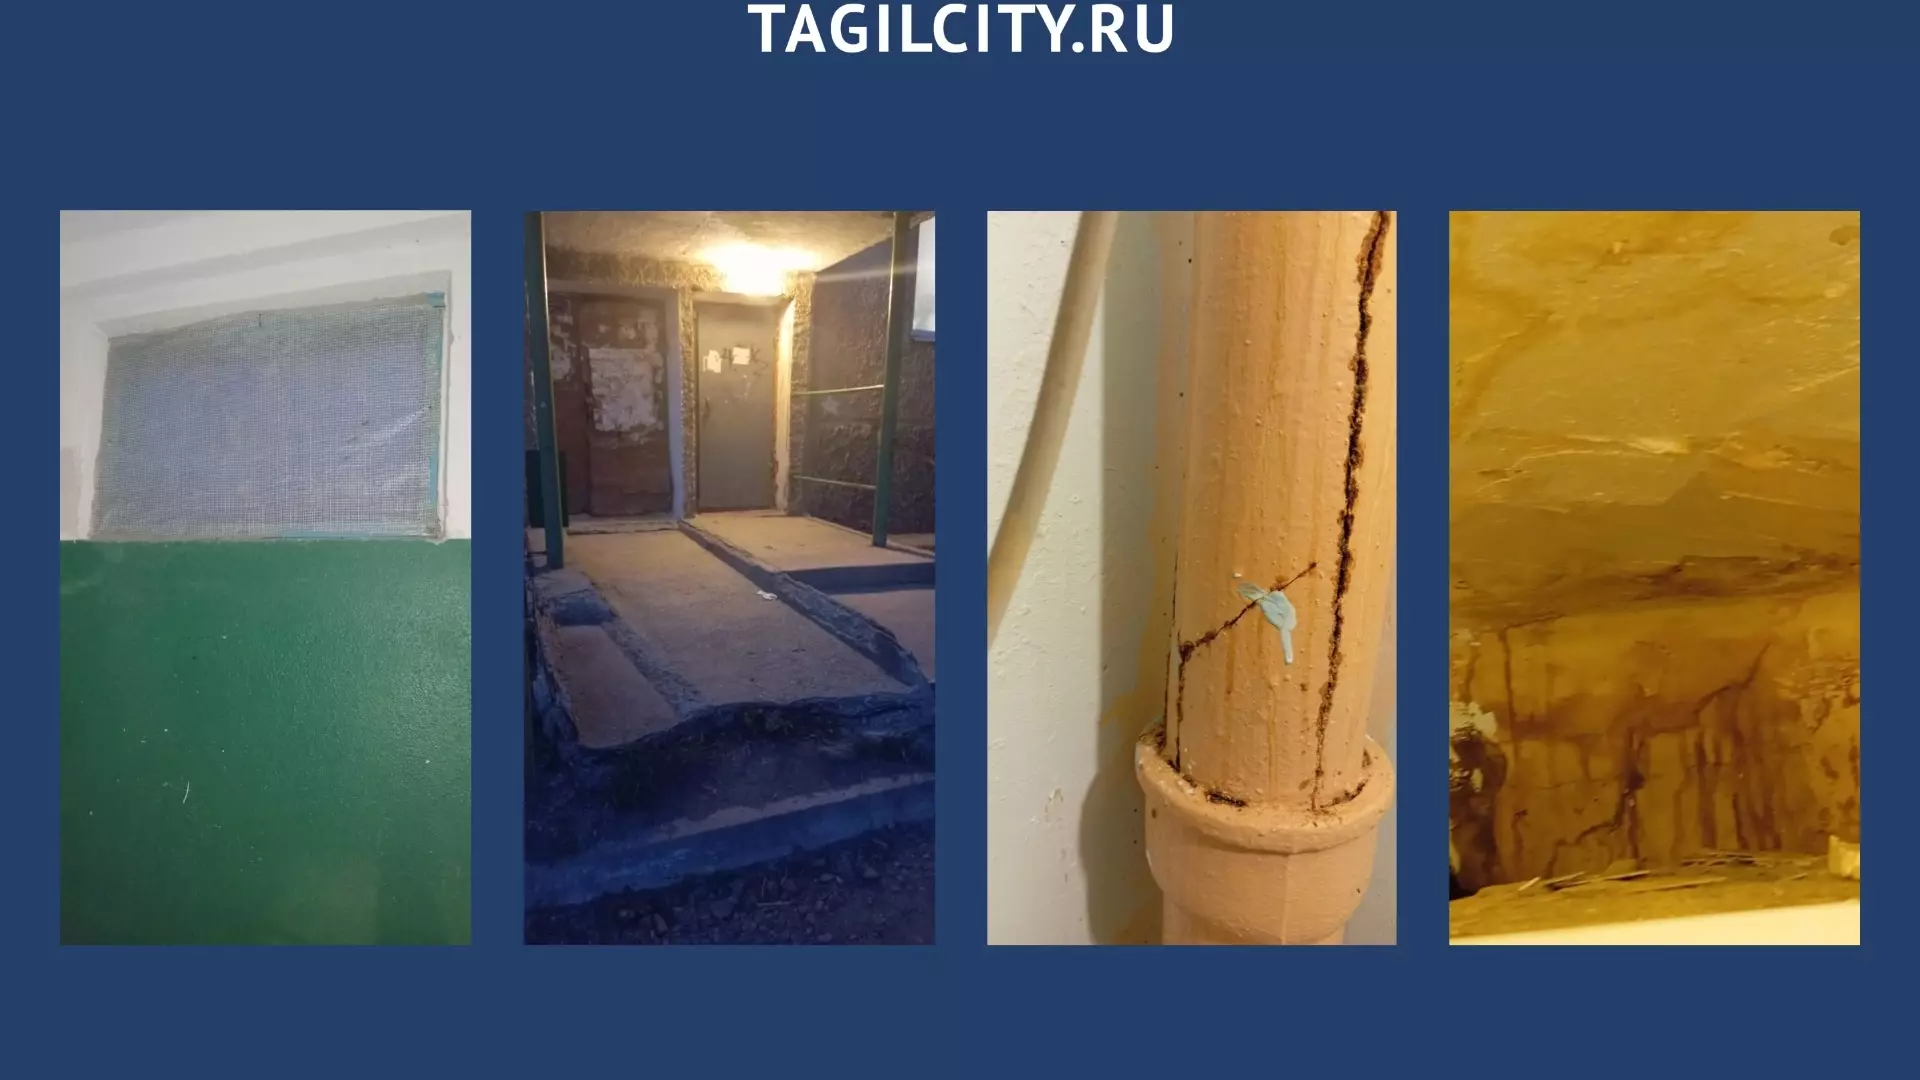 Жители поселка под Нижним Тагилом жалуются на состояние домов и благоустройство